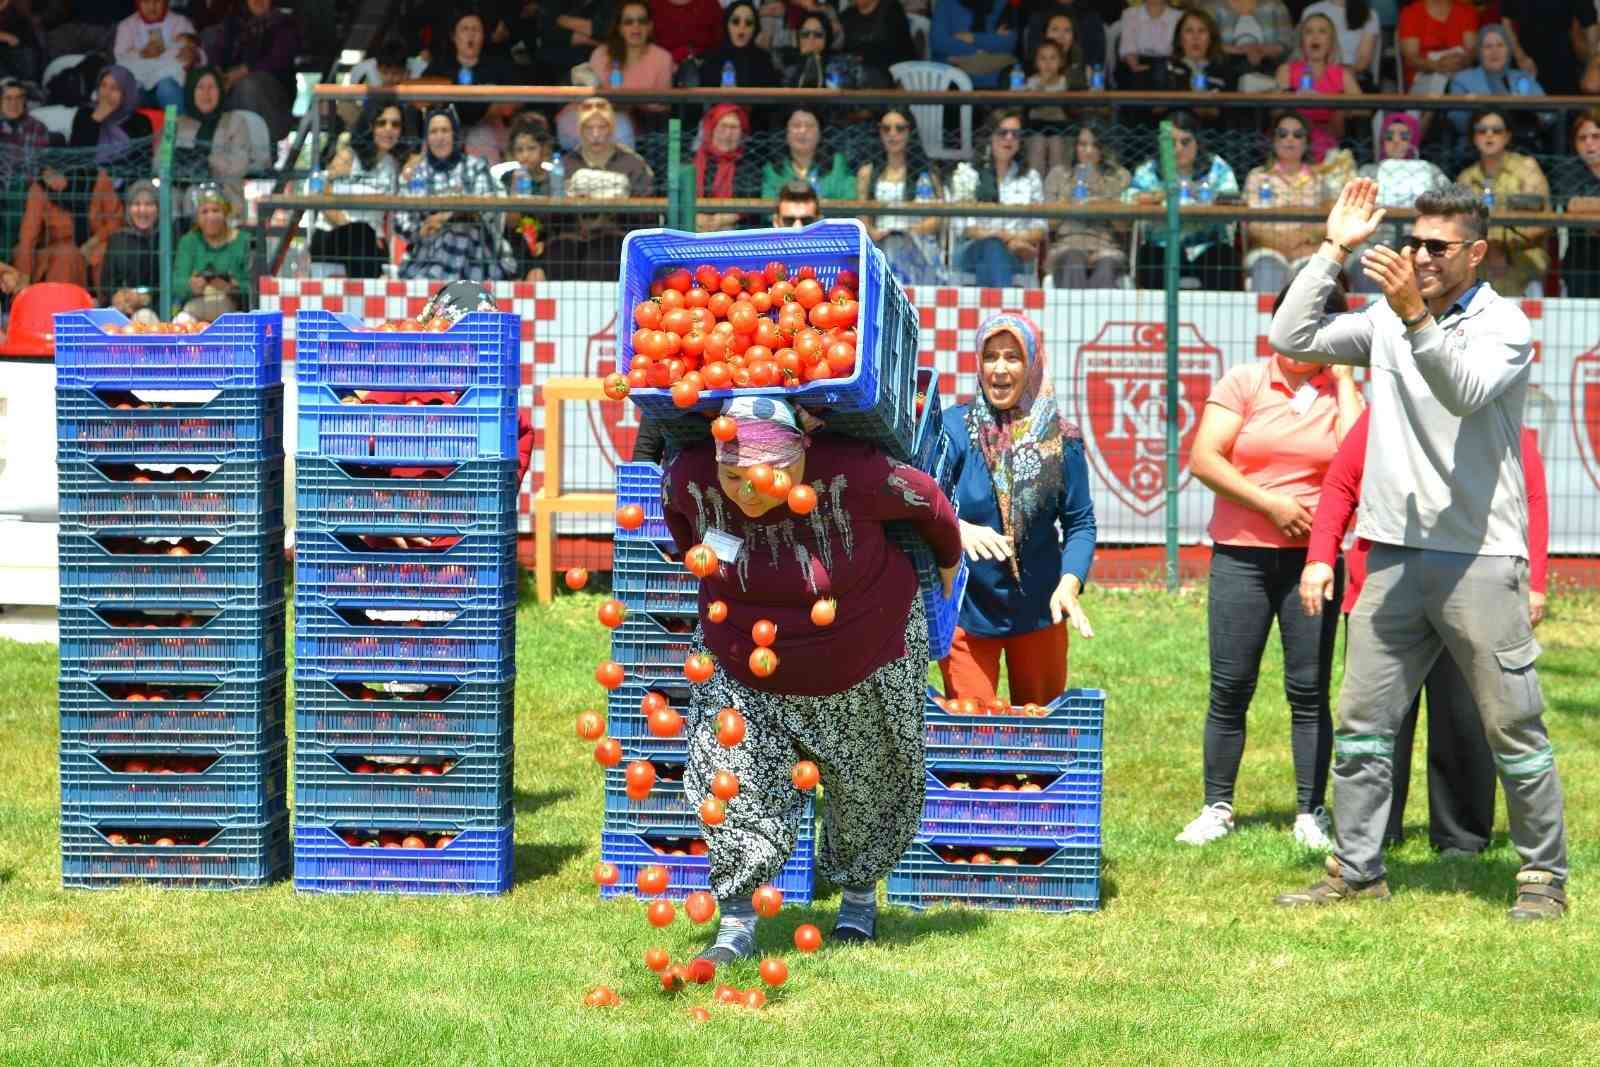 Kadınlar domates kasası yarışmasında erkeklere taş çıkarttı